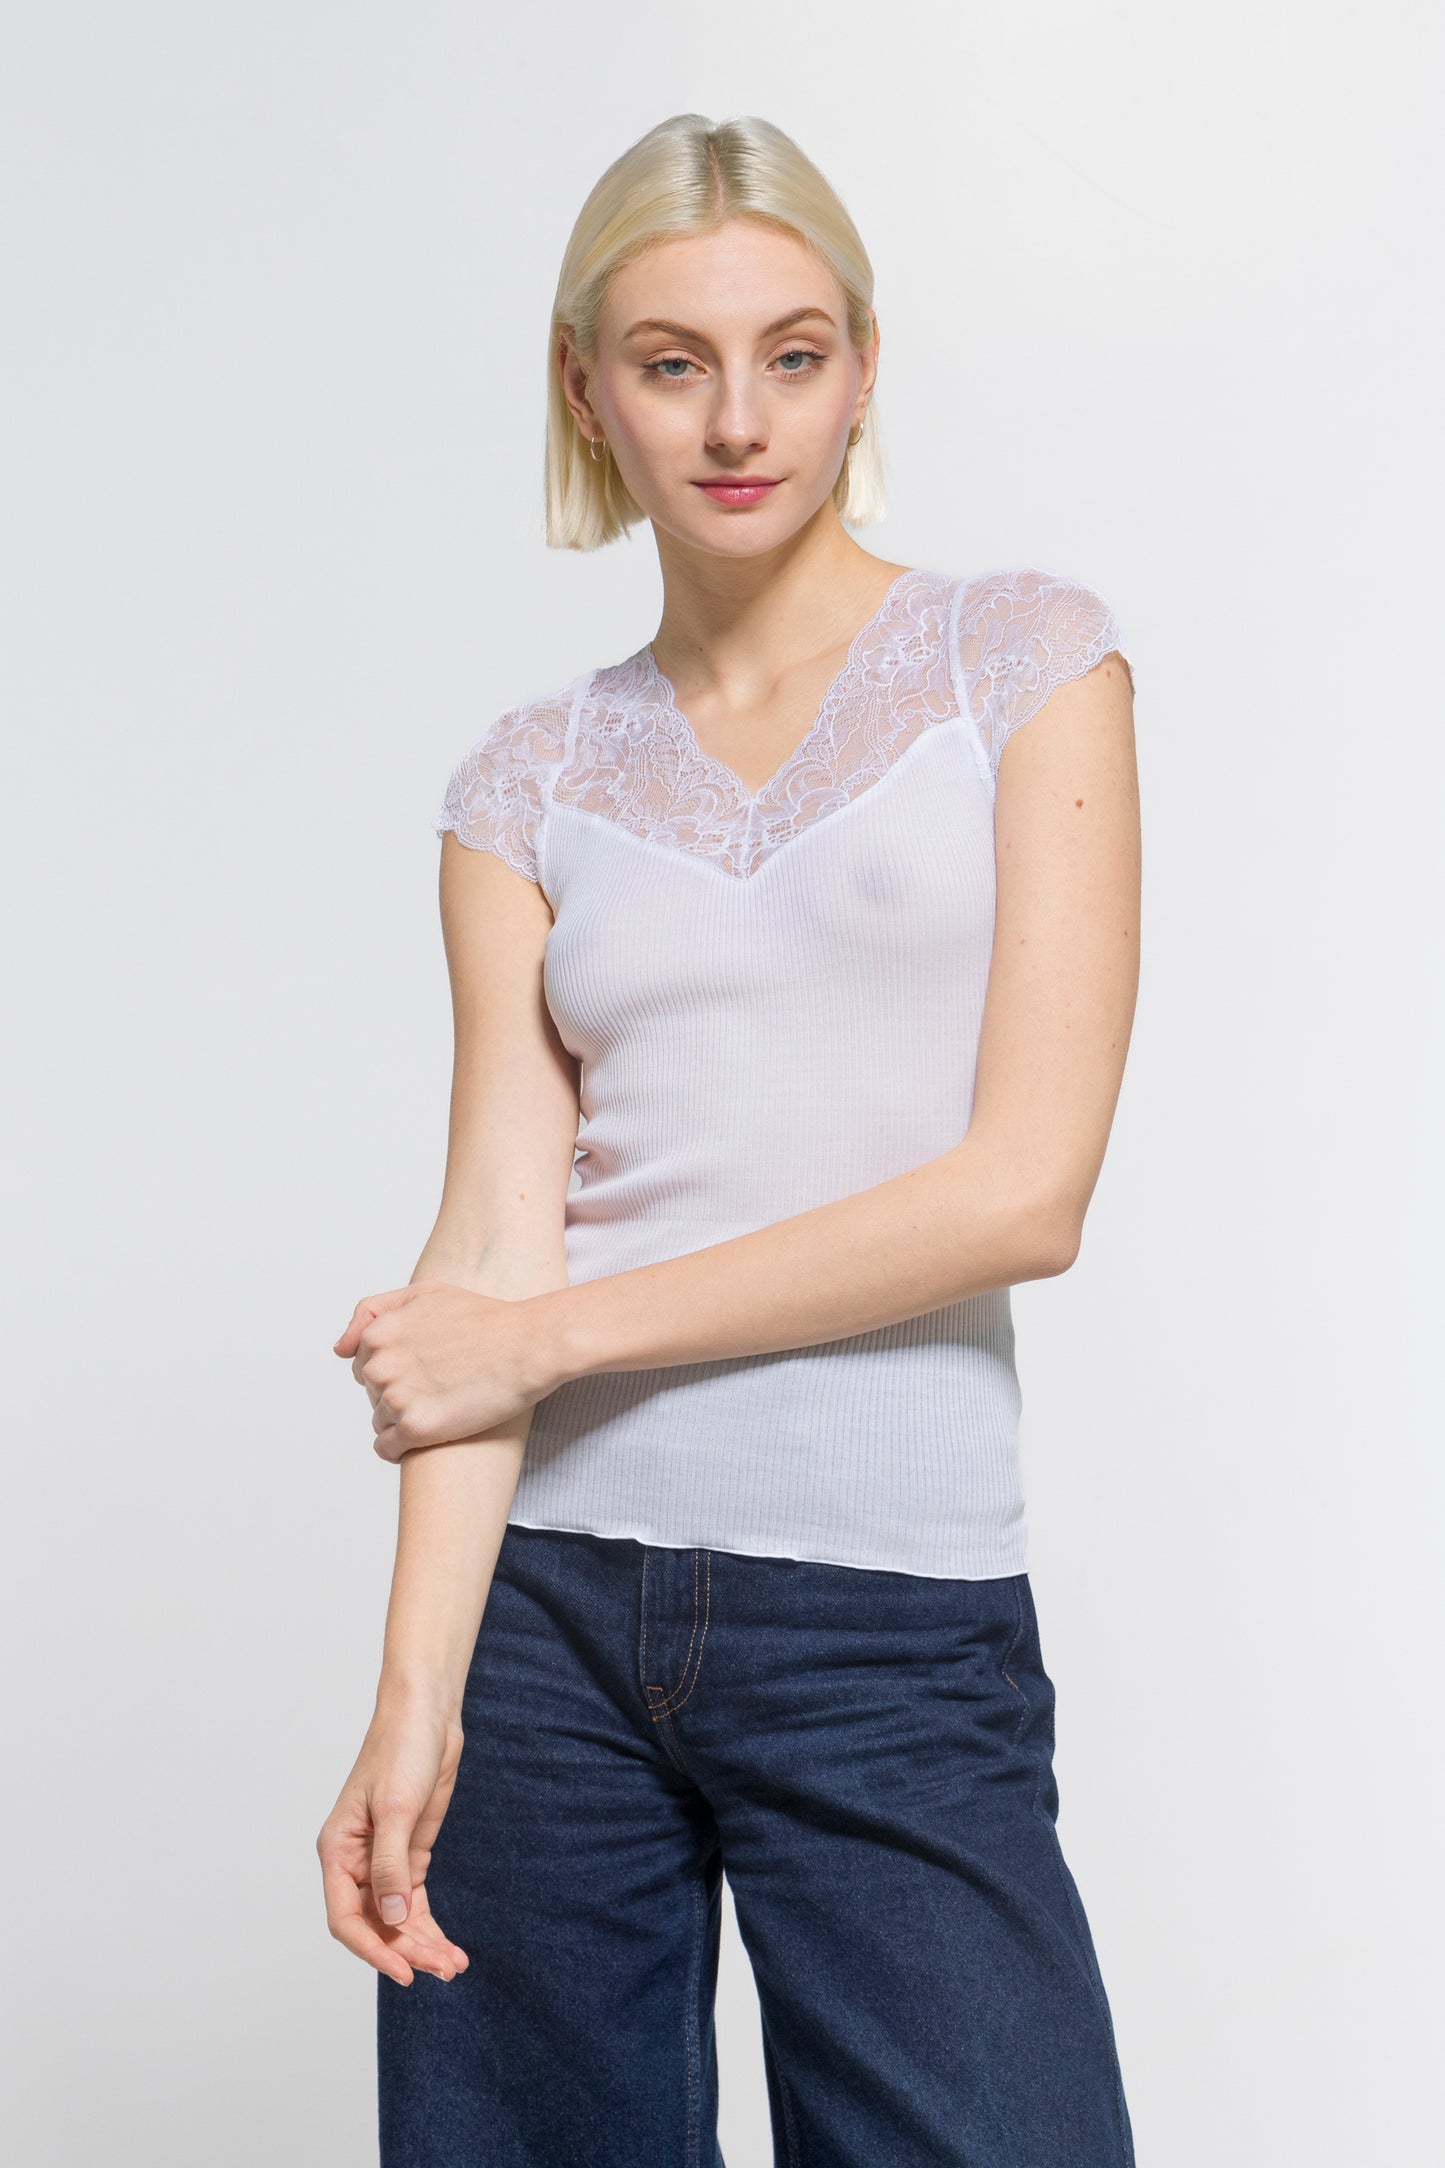 T-shirt Woman Cotton 7124 - Oscalito